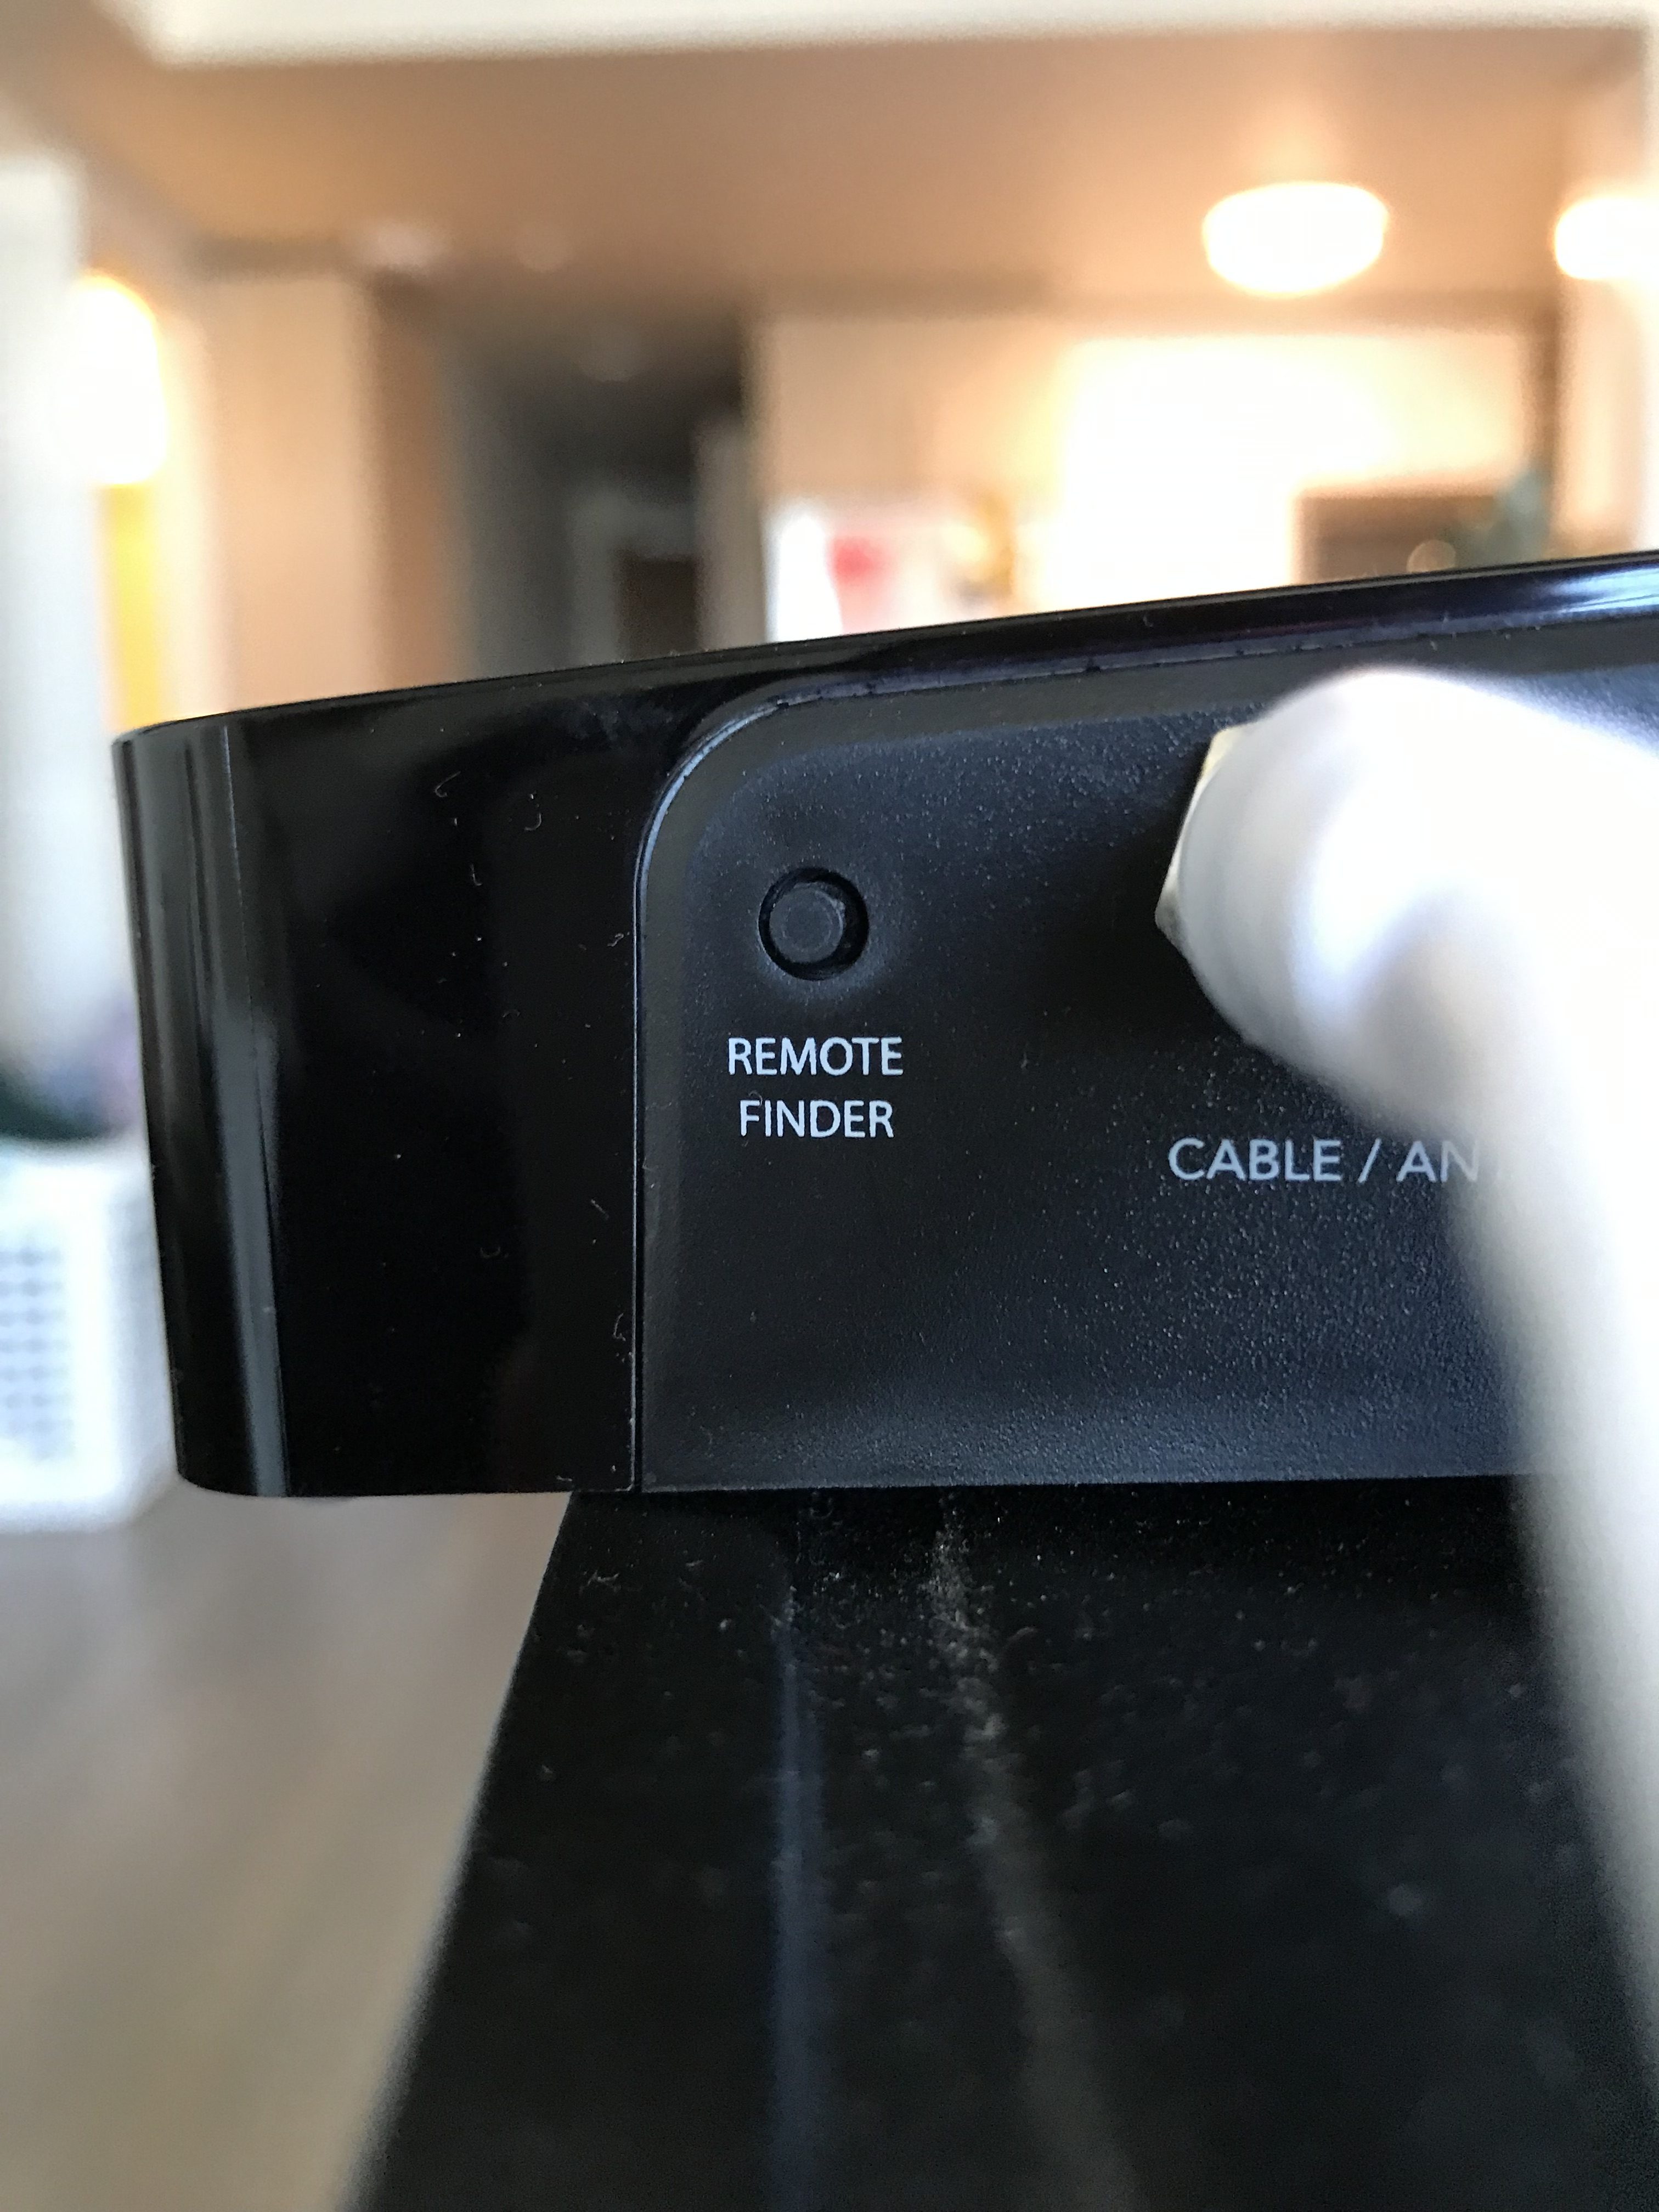 TiVo remote finder button